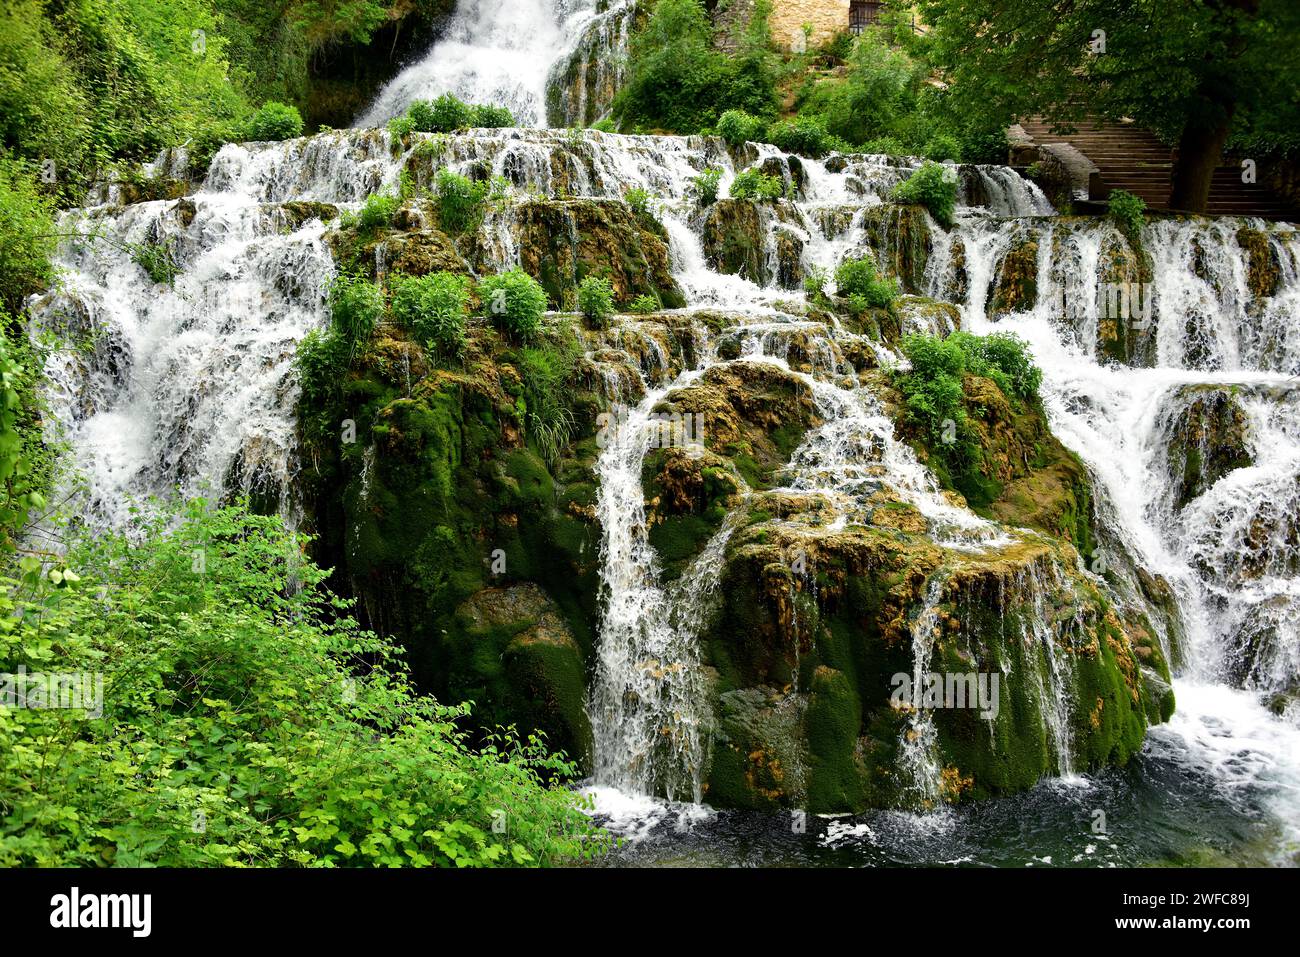 Orbaneja del Castillo, waterfall. Burgos province, Castilla y Leon, Spain. Stock Photo